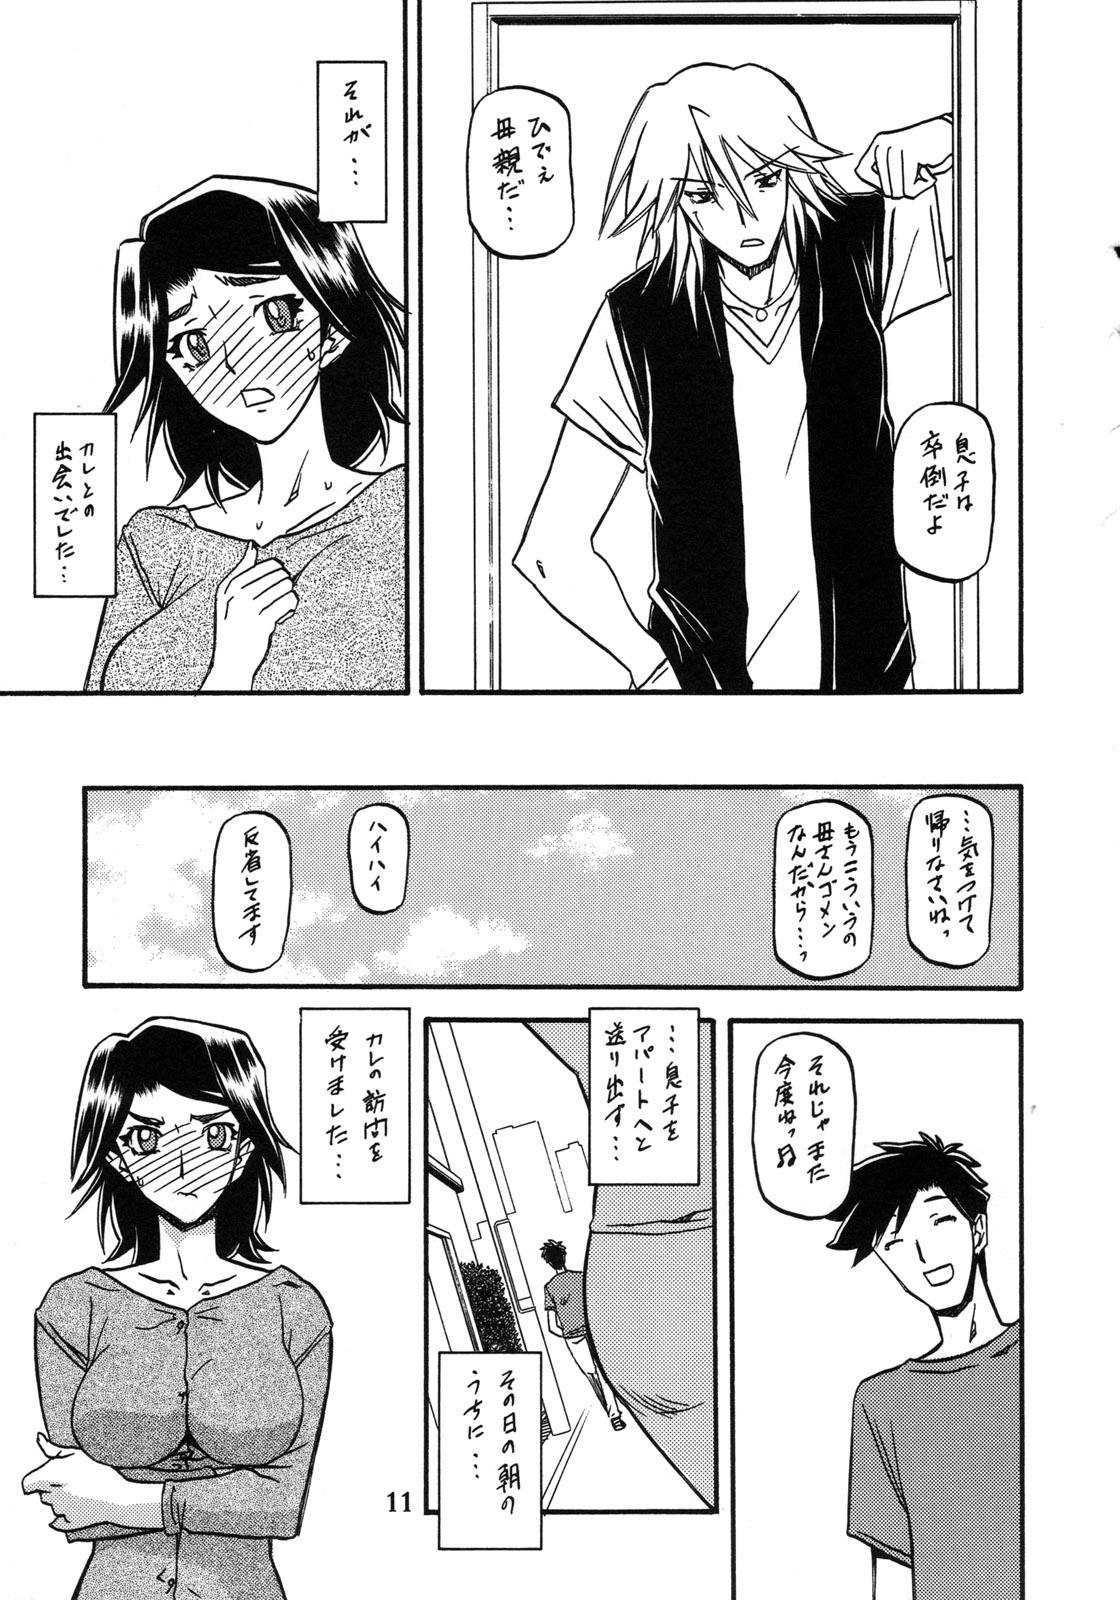 Fitness Akebi no Mi - Miwako Katei - Akebi no mi Best Blowjobs Ever - Page 11